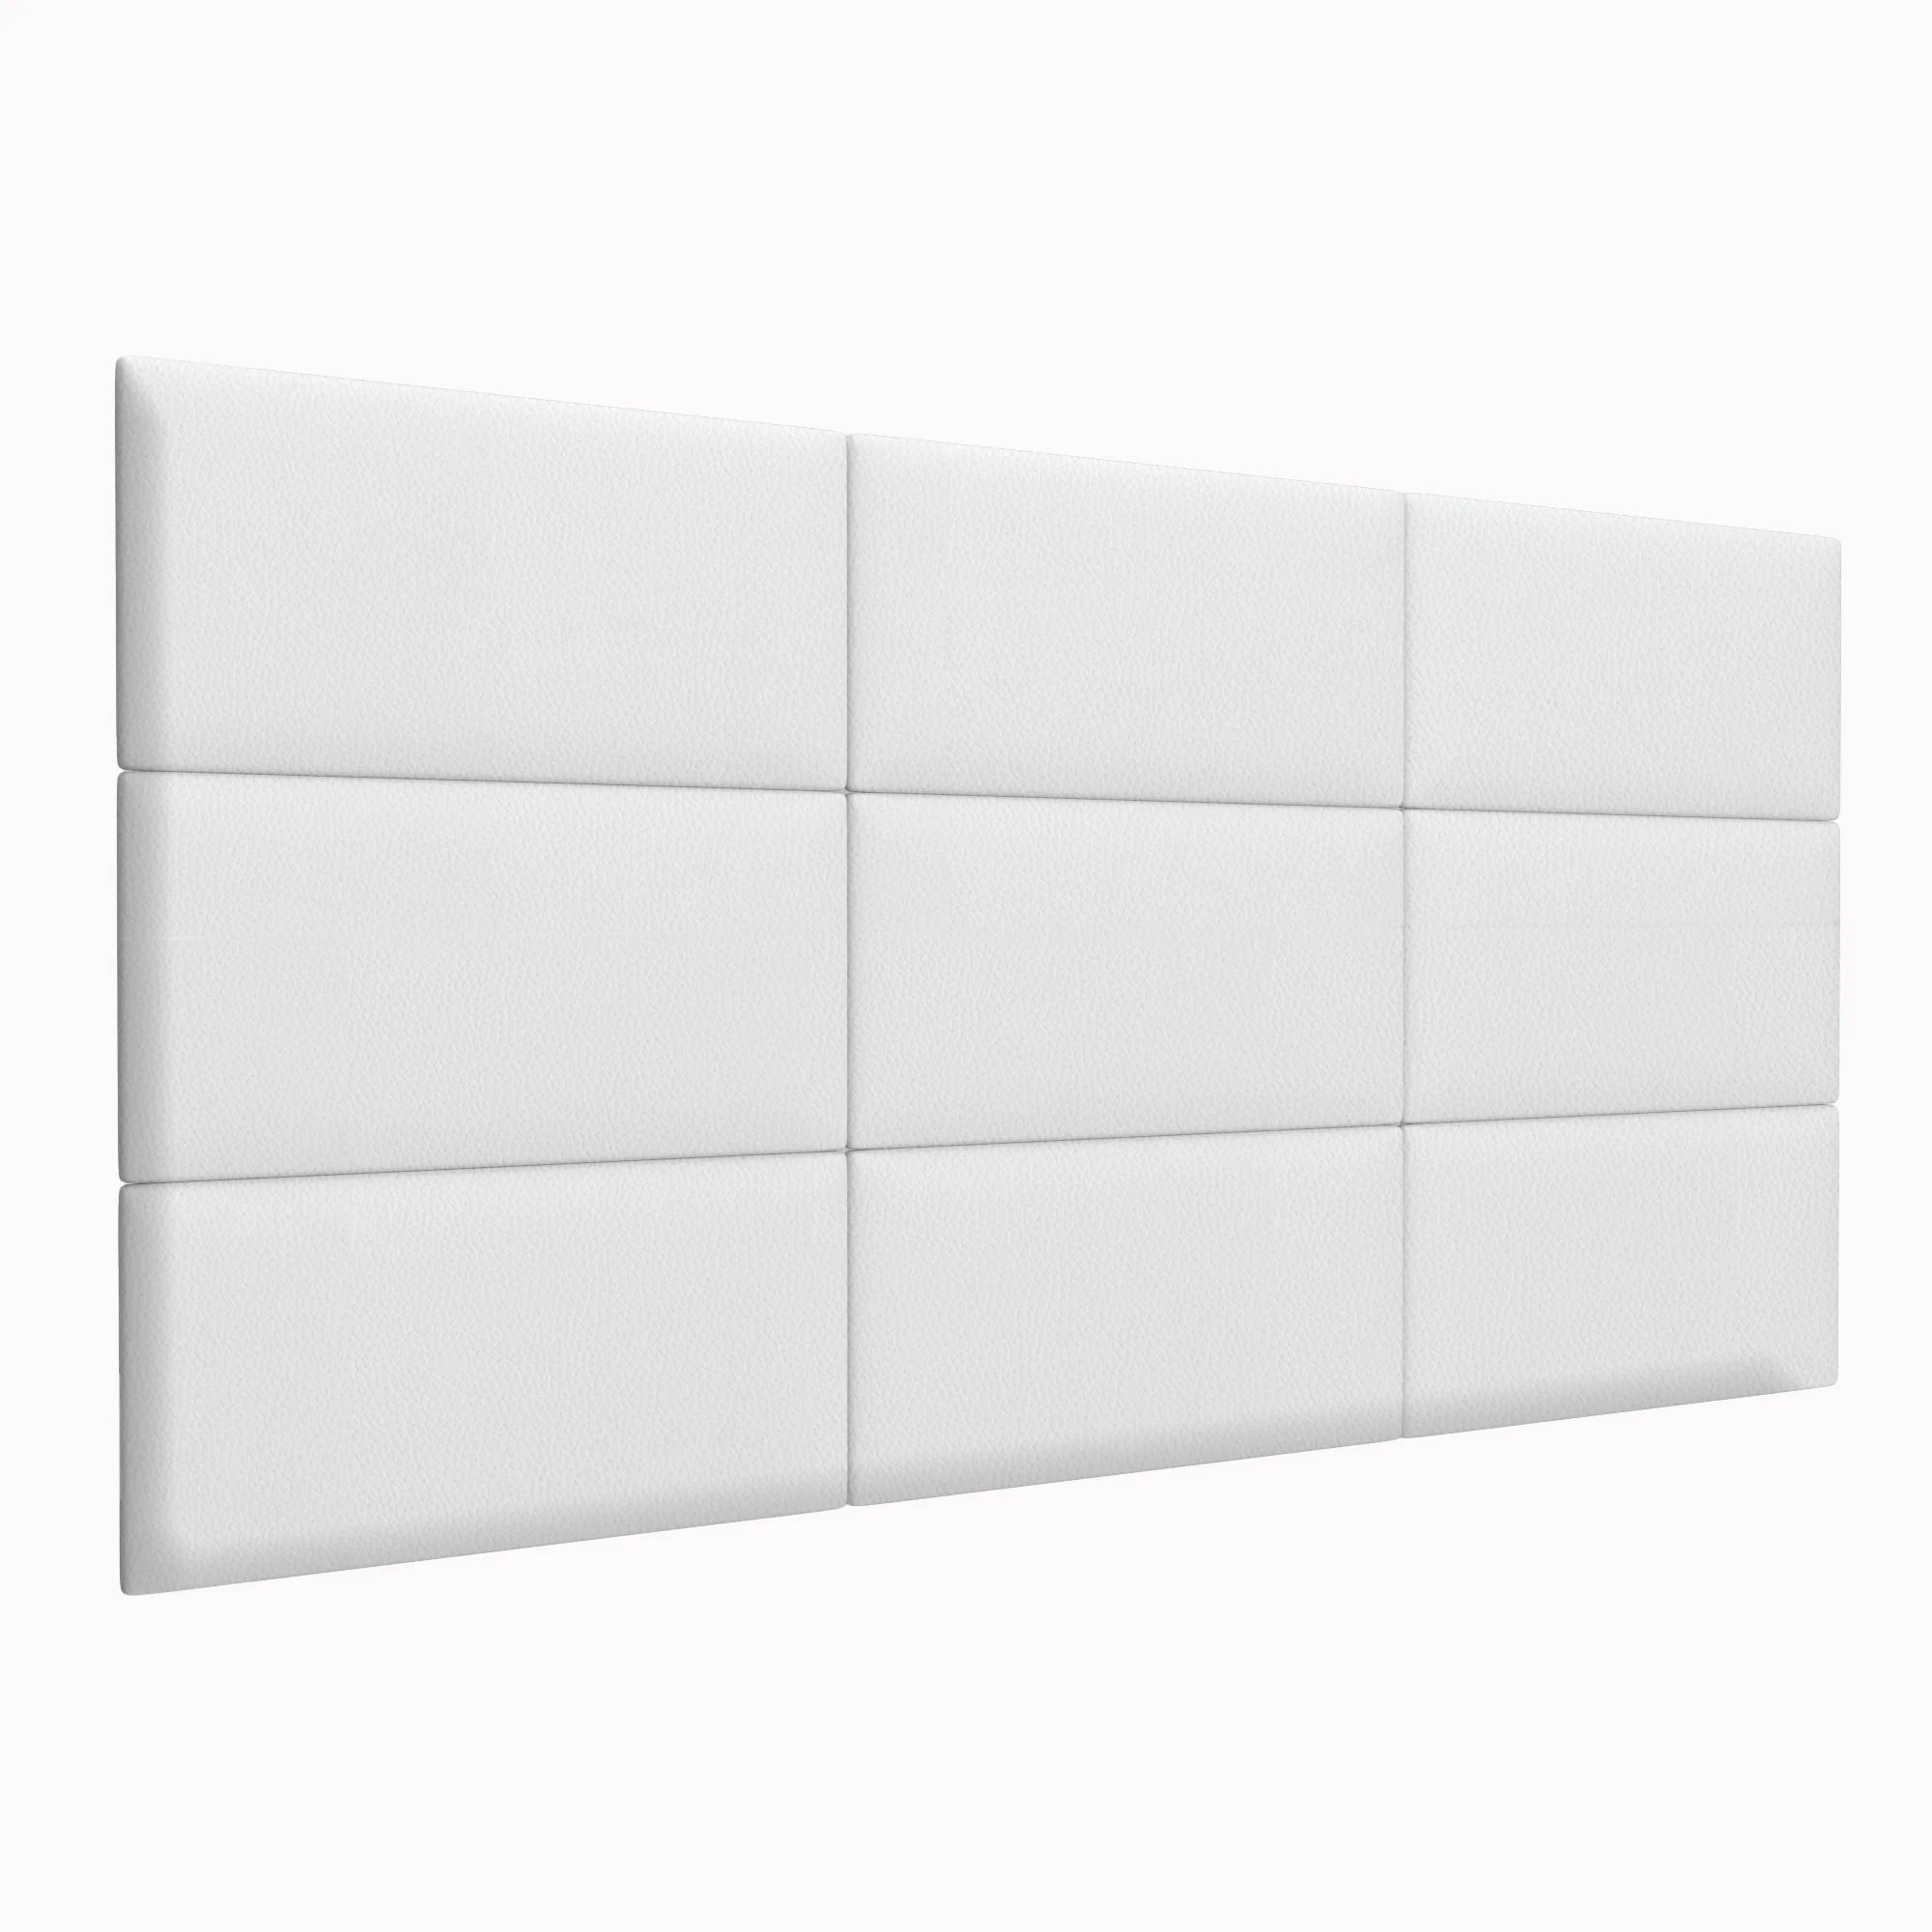 Стеновая панель Eco Leather White 30х60 см 2 шт.